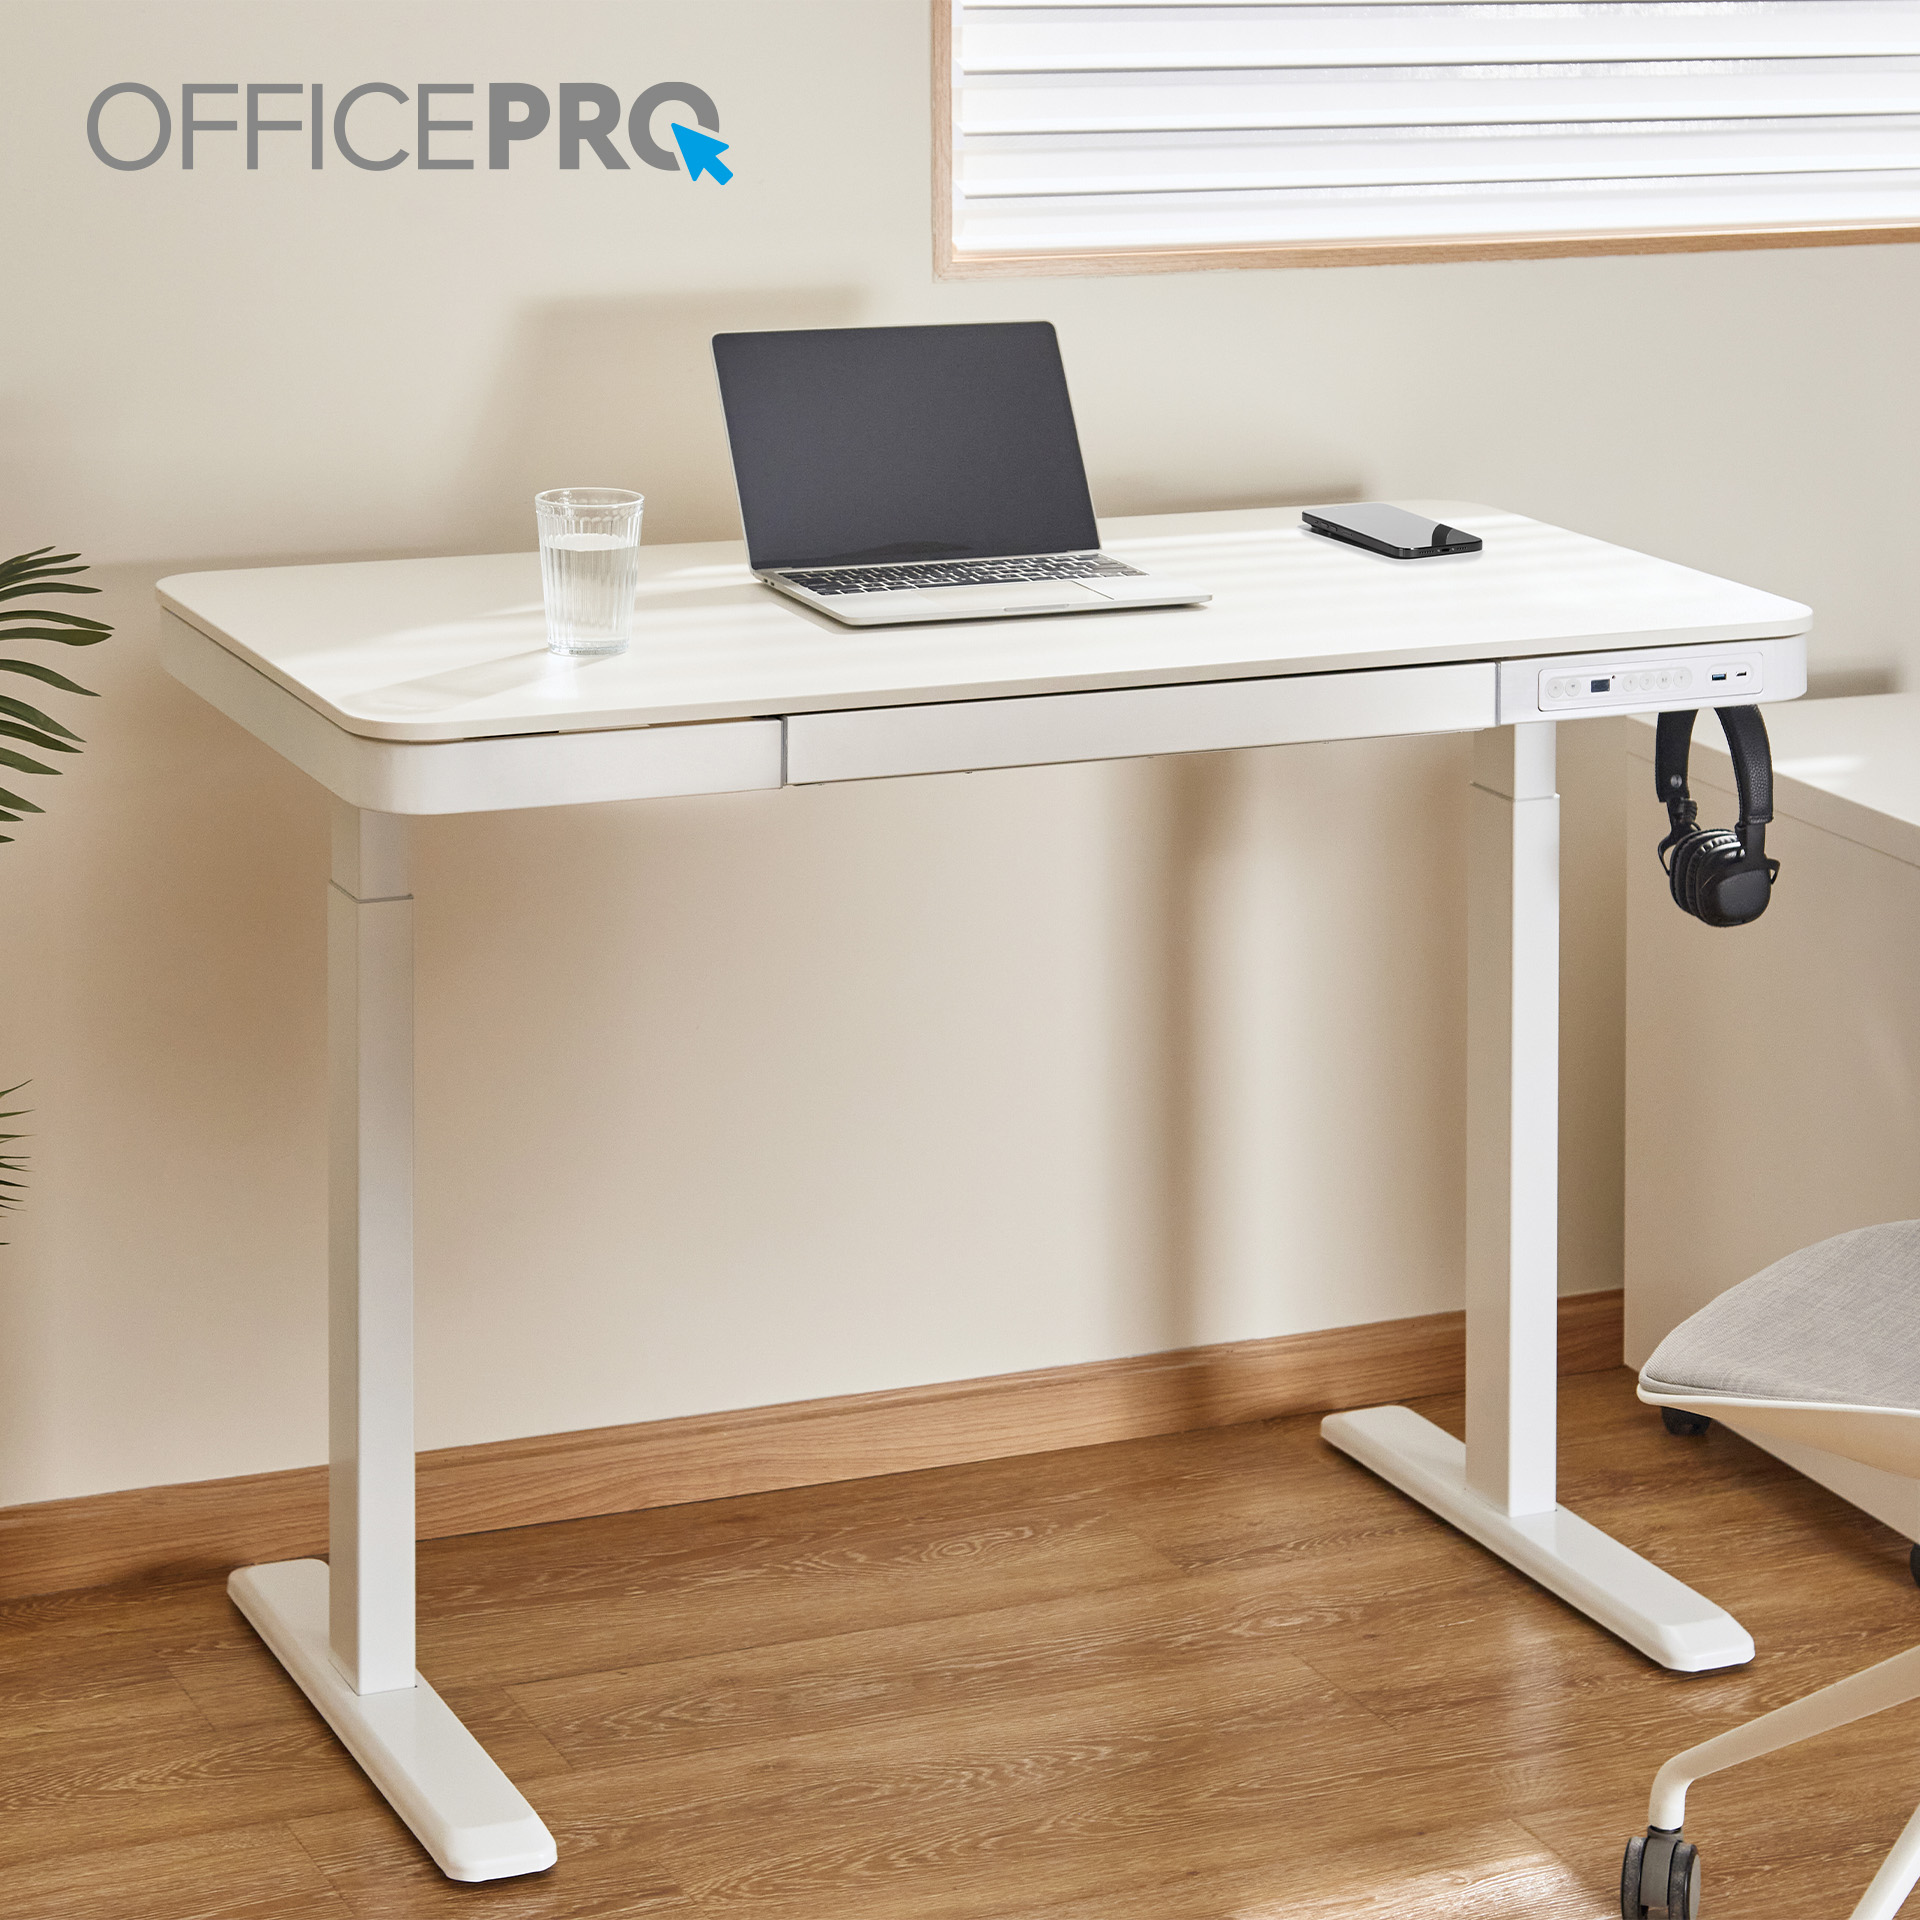 Комп'ютерний стіл OfficePro з електрорегулюванням висоти білий (ODE111WW) - фото 15